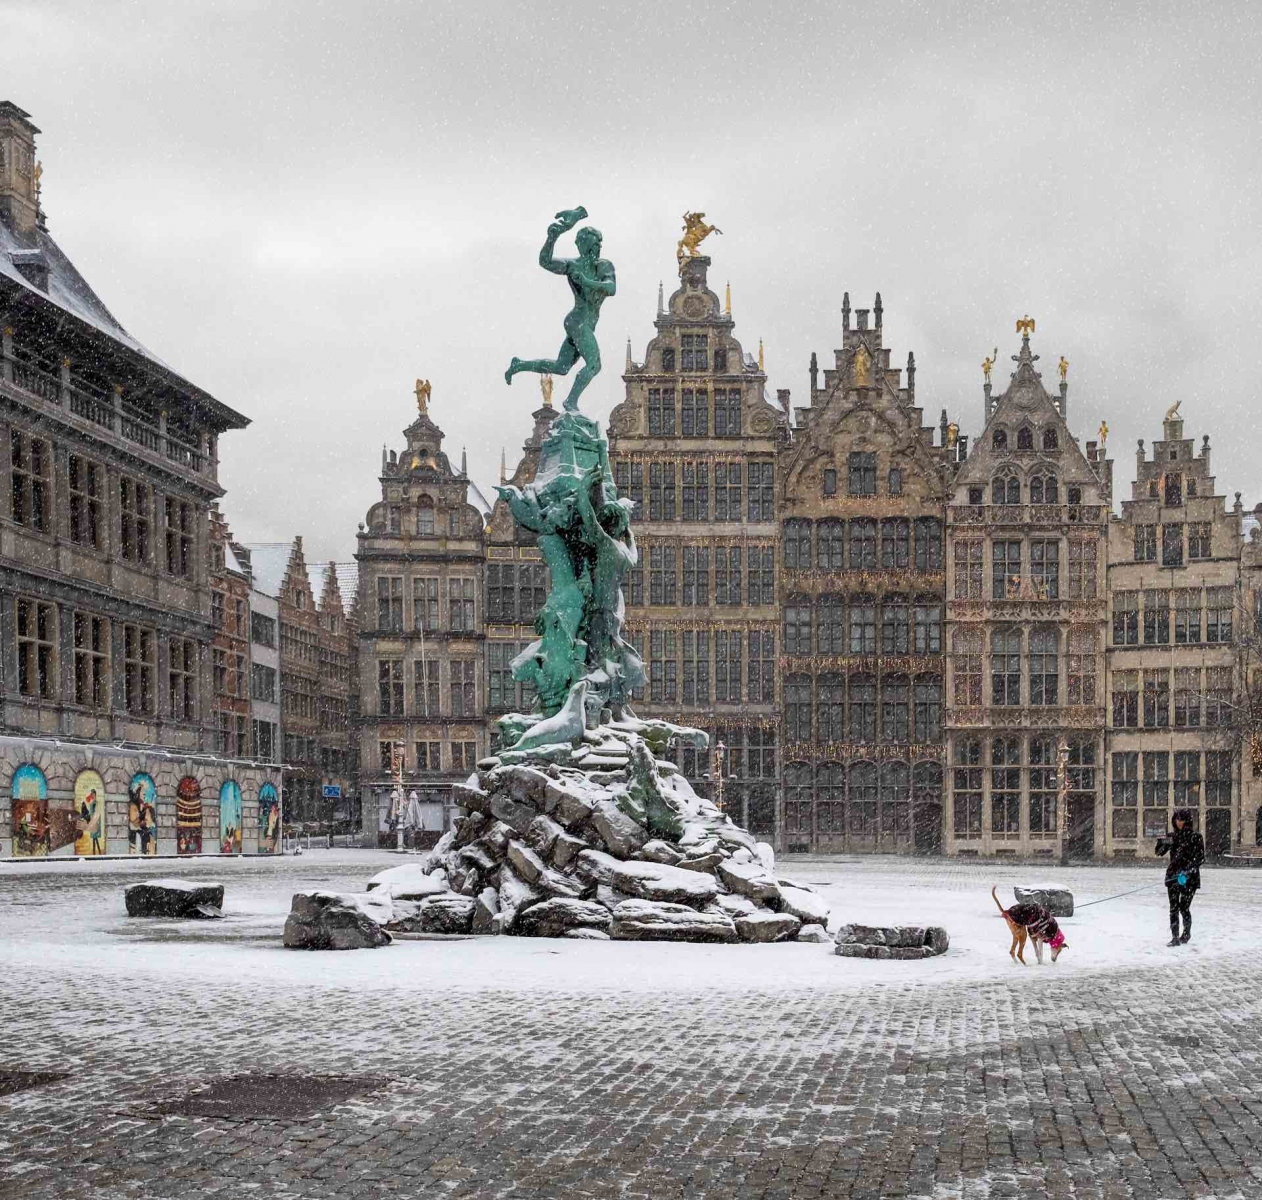 La plaza "Grote Markt" en la ciudad de Amberes, cubierta de nieve